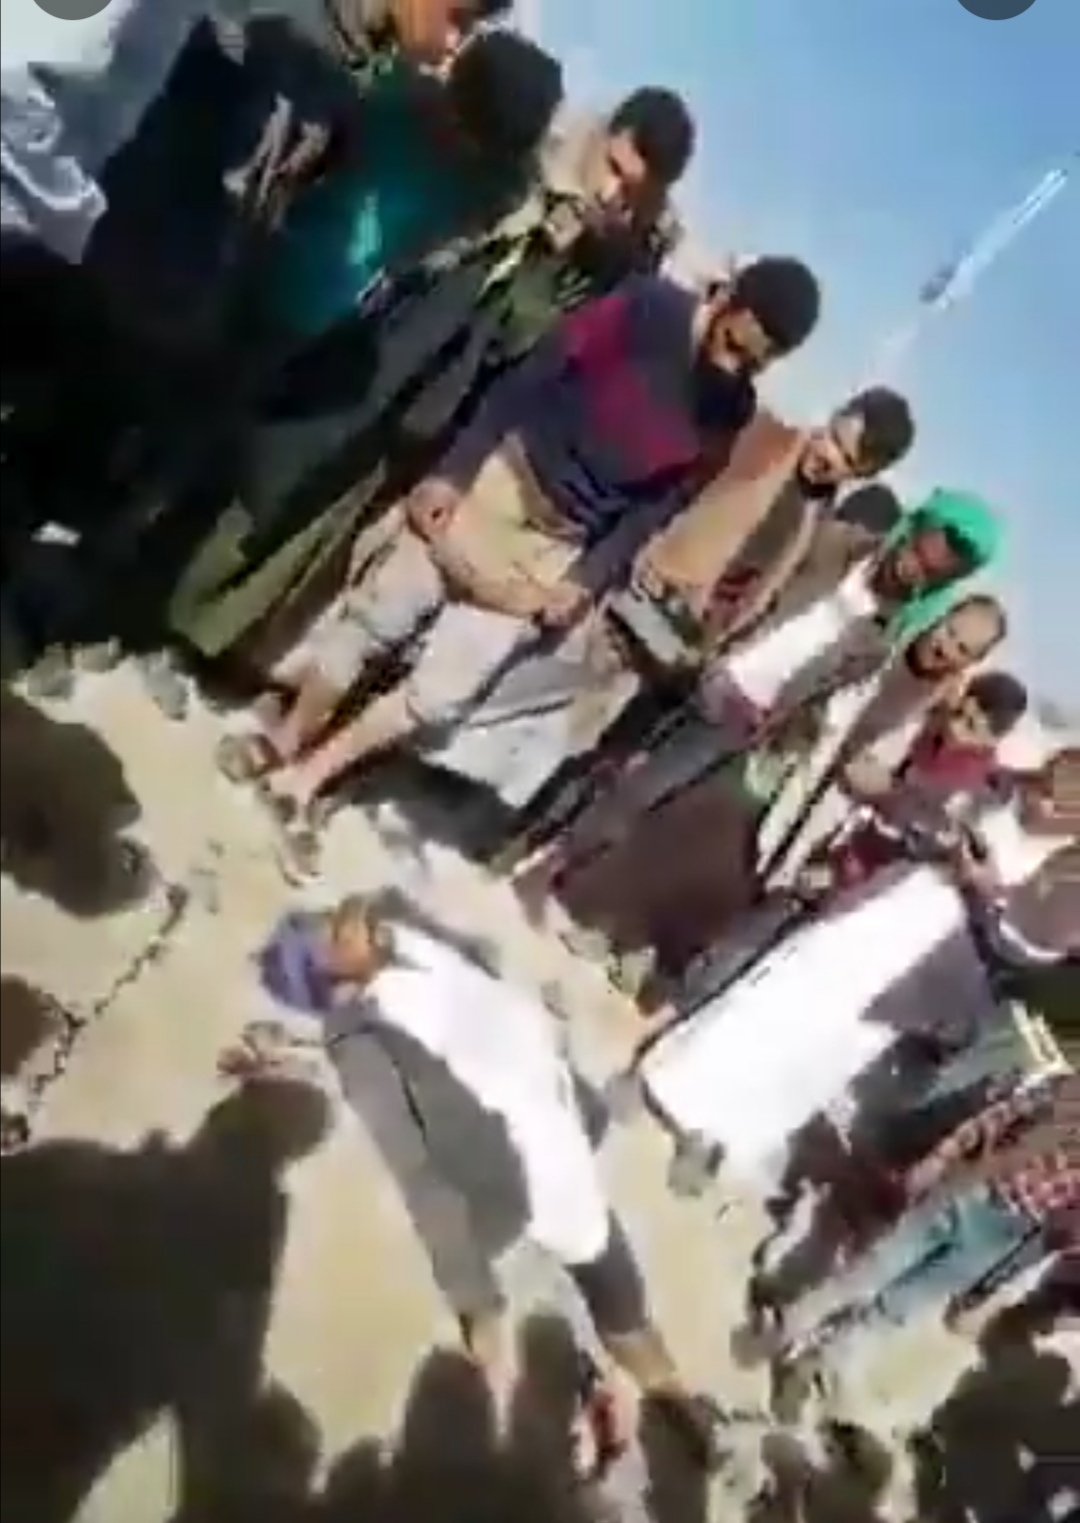 بالفيديو مشرف حوثي يقتل أخوين ويصيب ثالث في صنعاء لرفضهم تأجير عقارهم منه